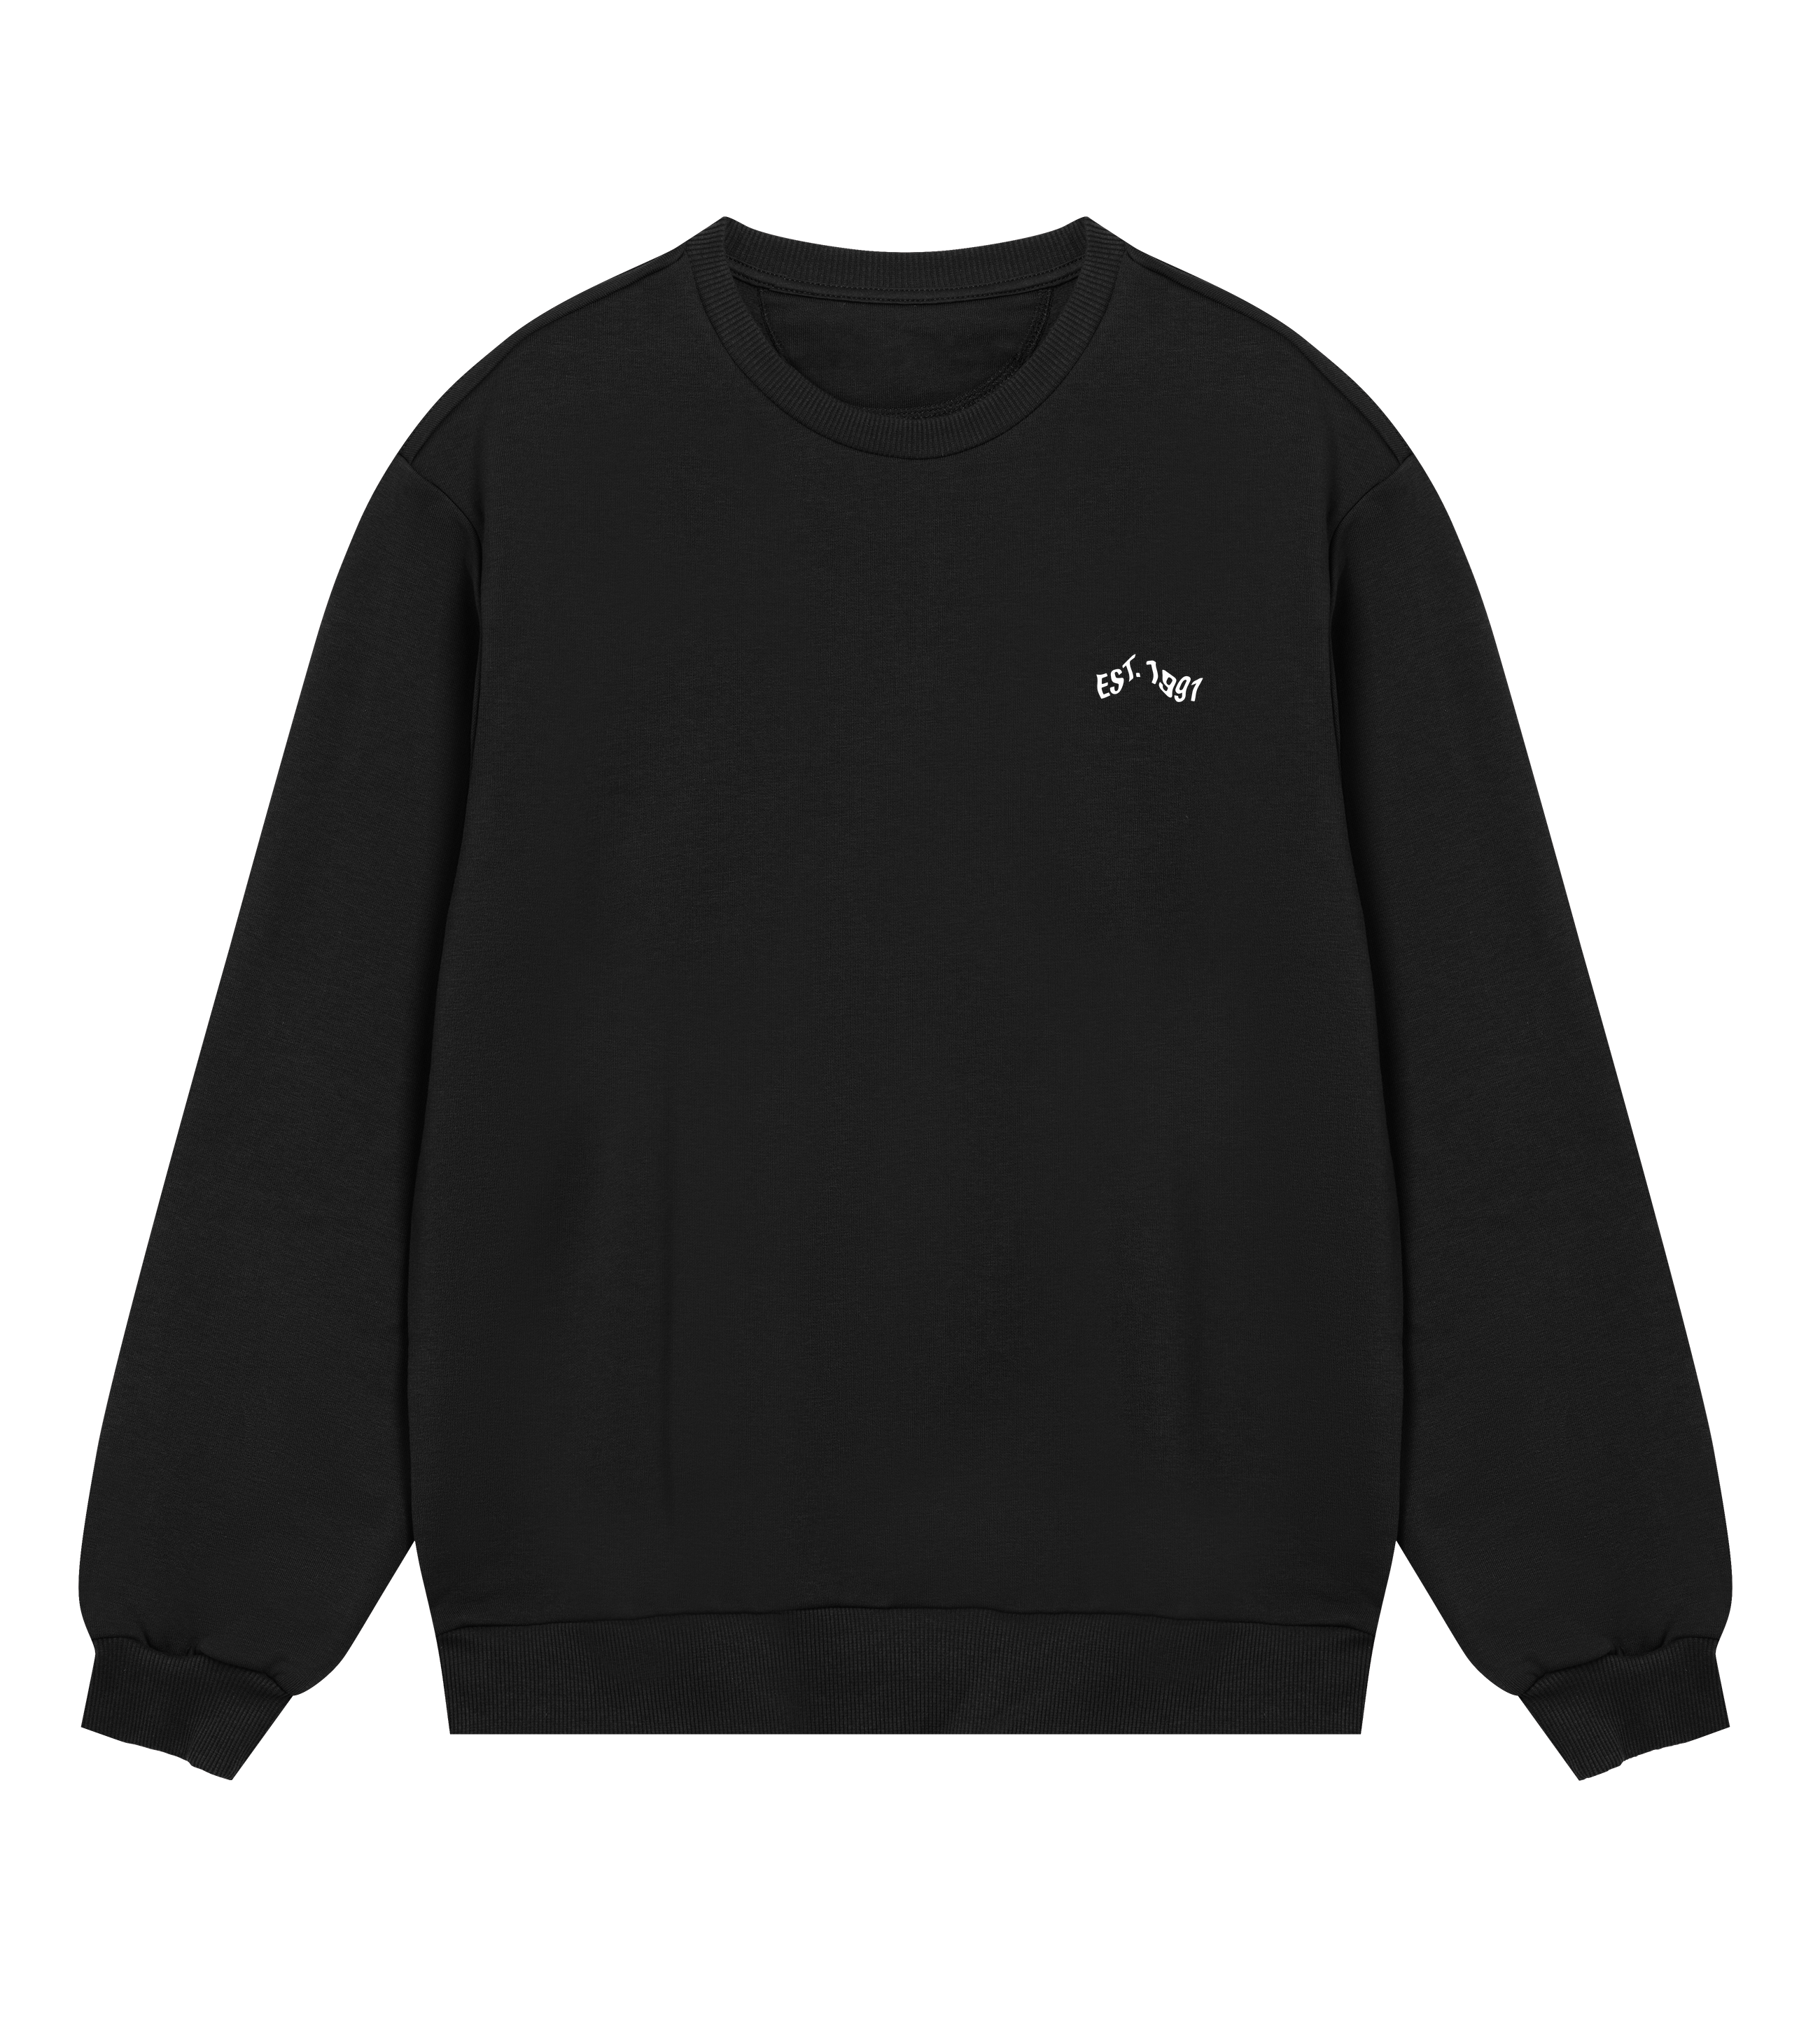 Park Lane/Est 1991 Sweatshirt